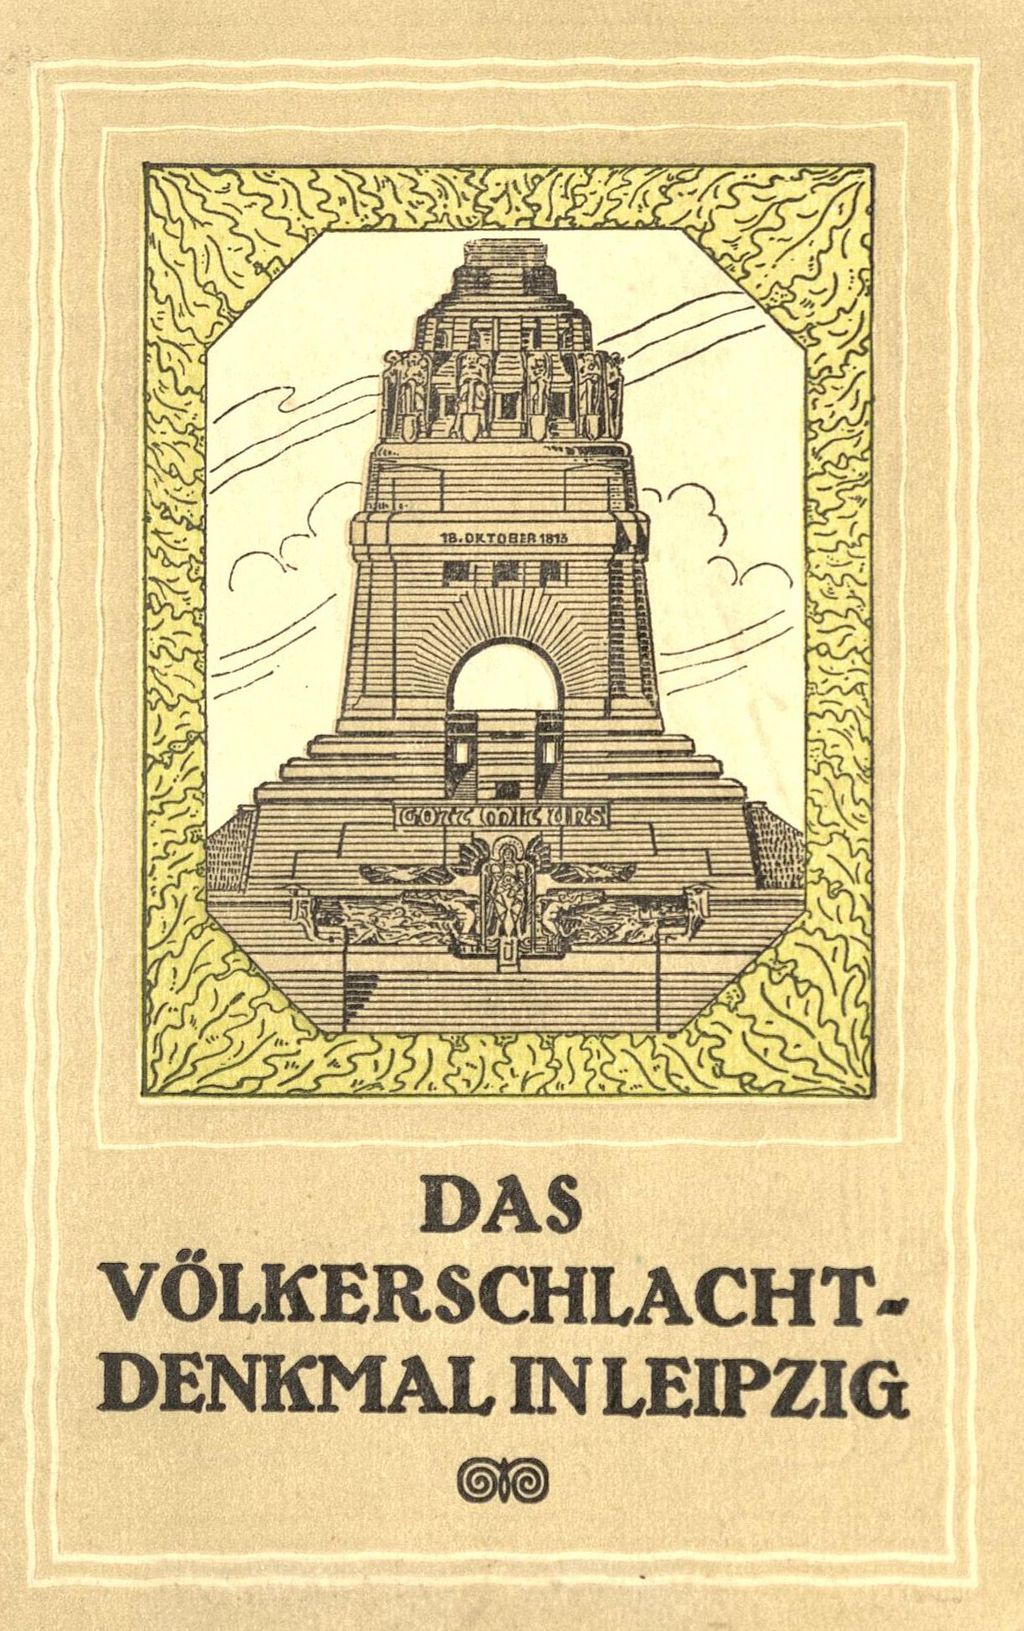 Druckgut: Broschüre zum Völkerschlachtdenkmal, nach 1913